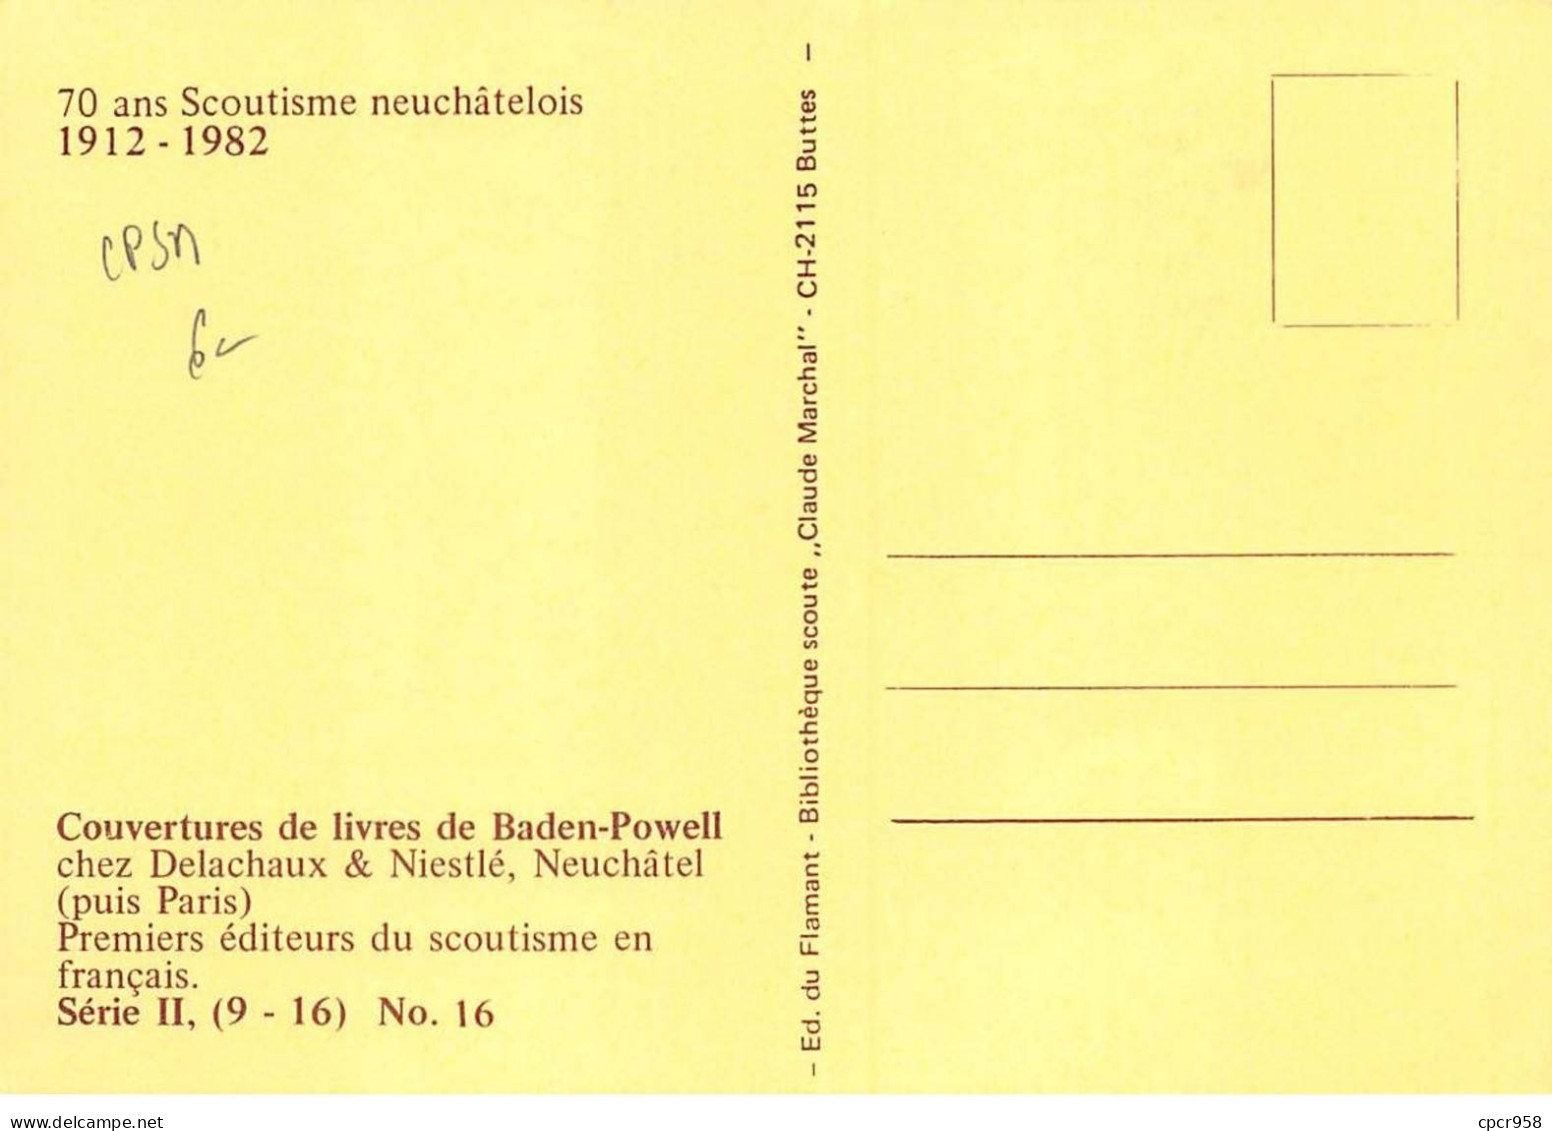 SCOUTISME - SAN36095 - 70 Ans Scoutisme Neuchâtelois - Couvertures Livres Baden- Série II, (9-16), N°16  - CPSM 15x10 Cm - Movimiento Scout